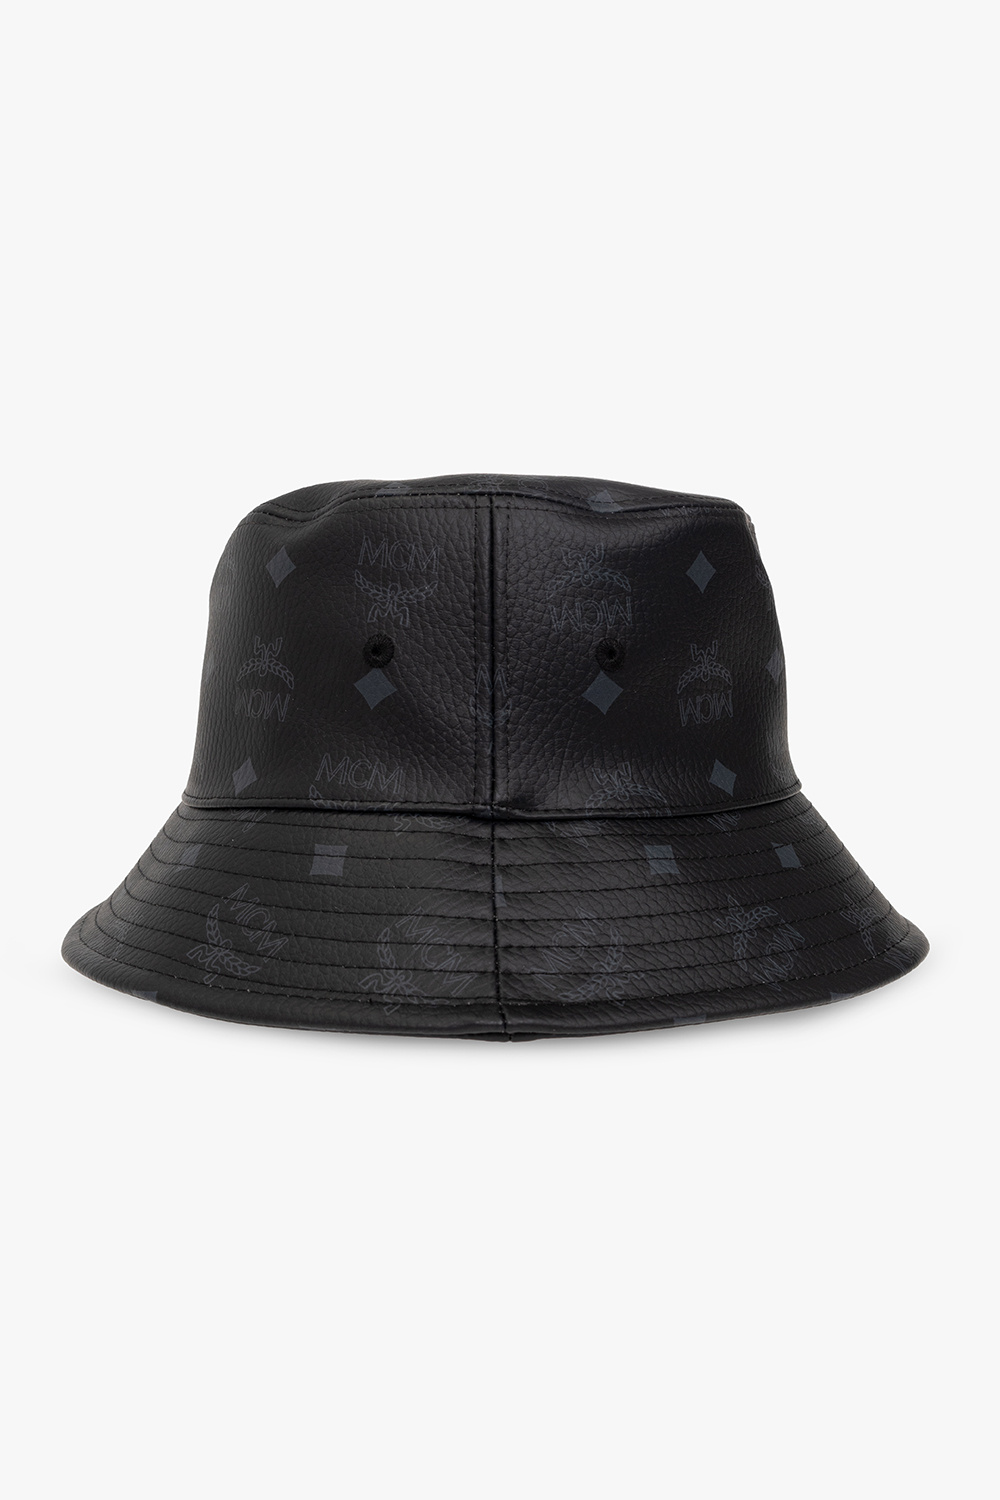 Louis Vuitton Black Casquette Essential Monogram Cap Size 58